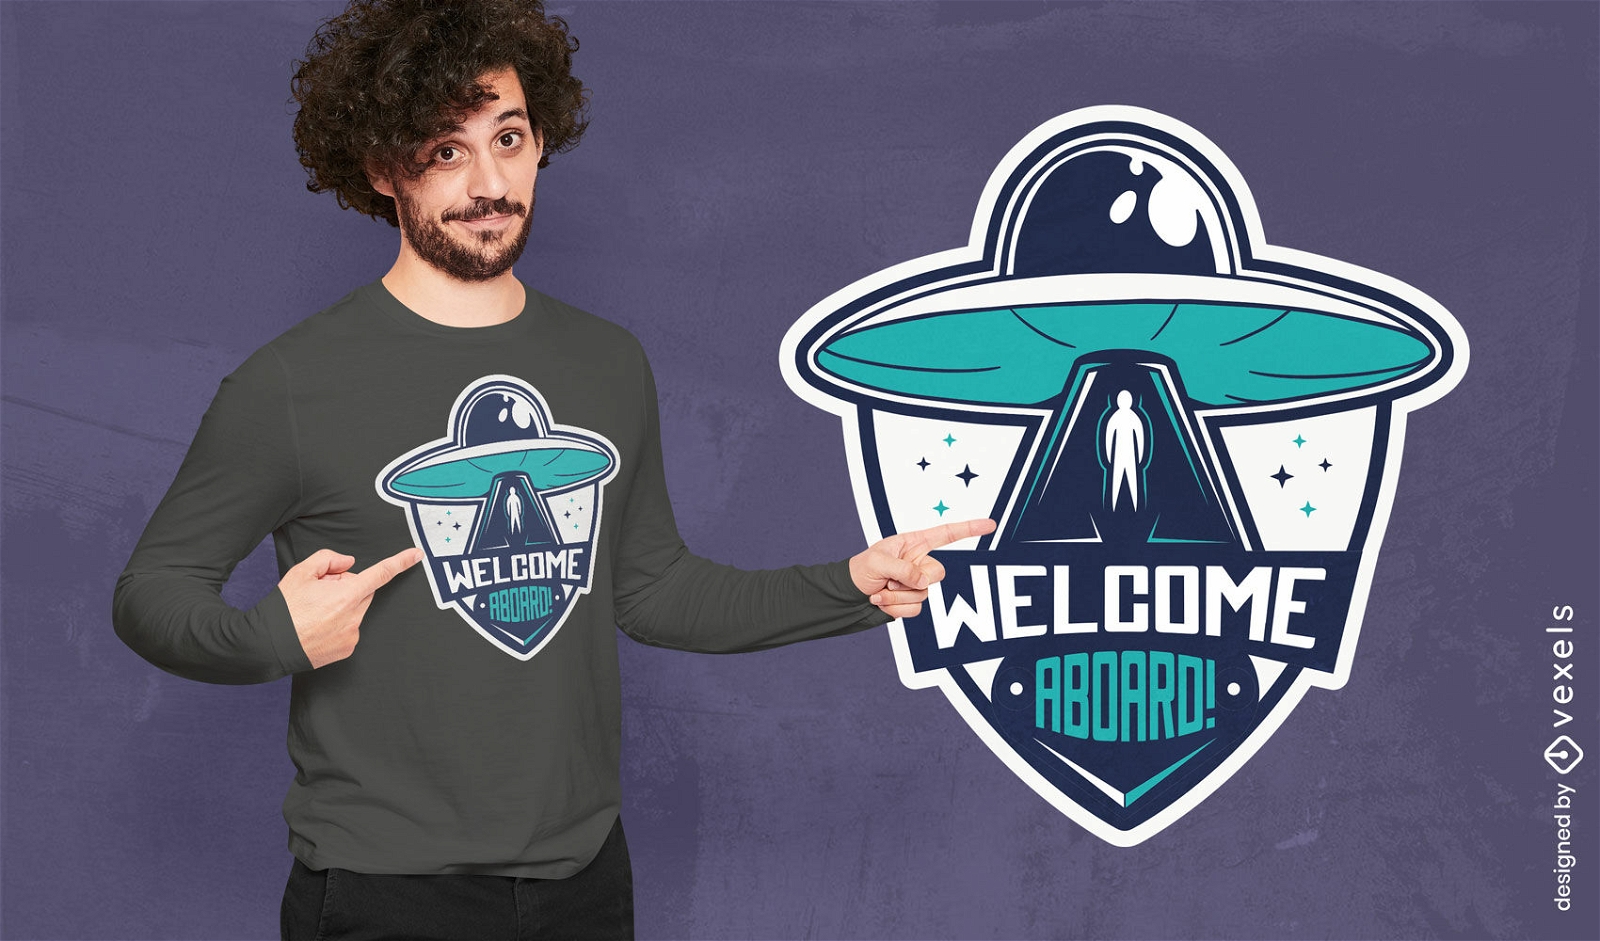 Willkommen an Bord des au?erirdischen Raumschiff-T-Shirt-Designs